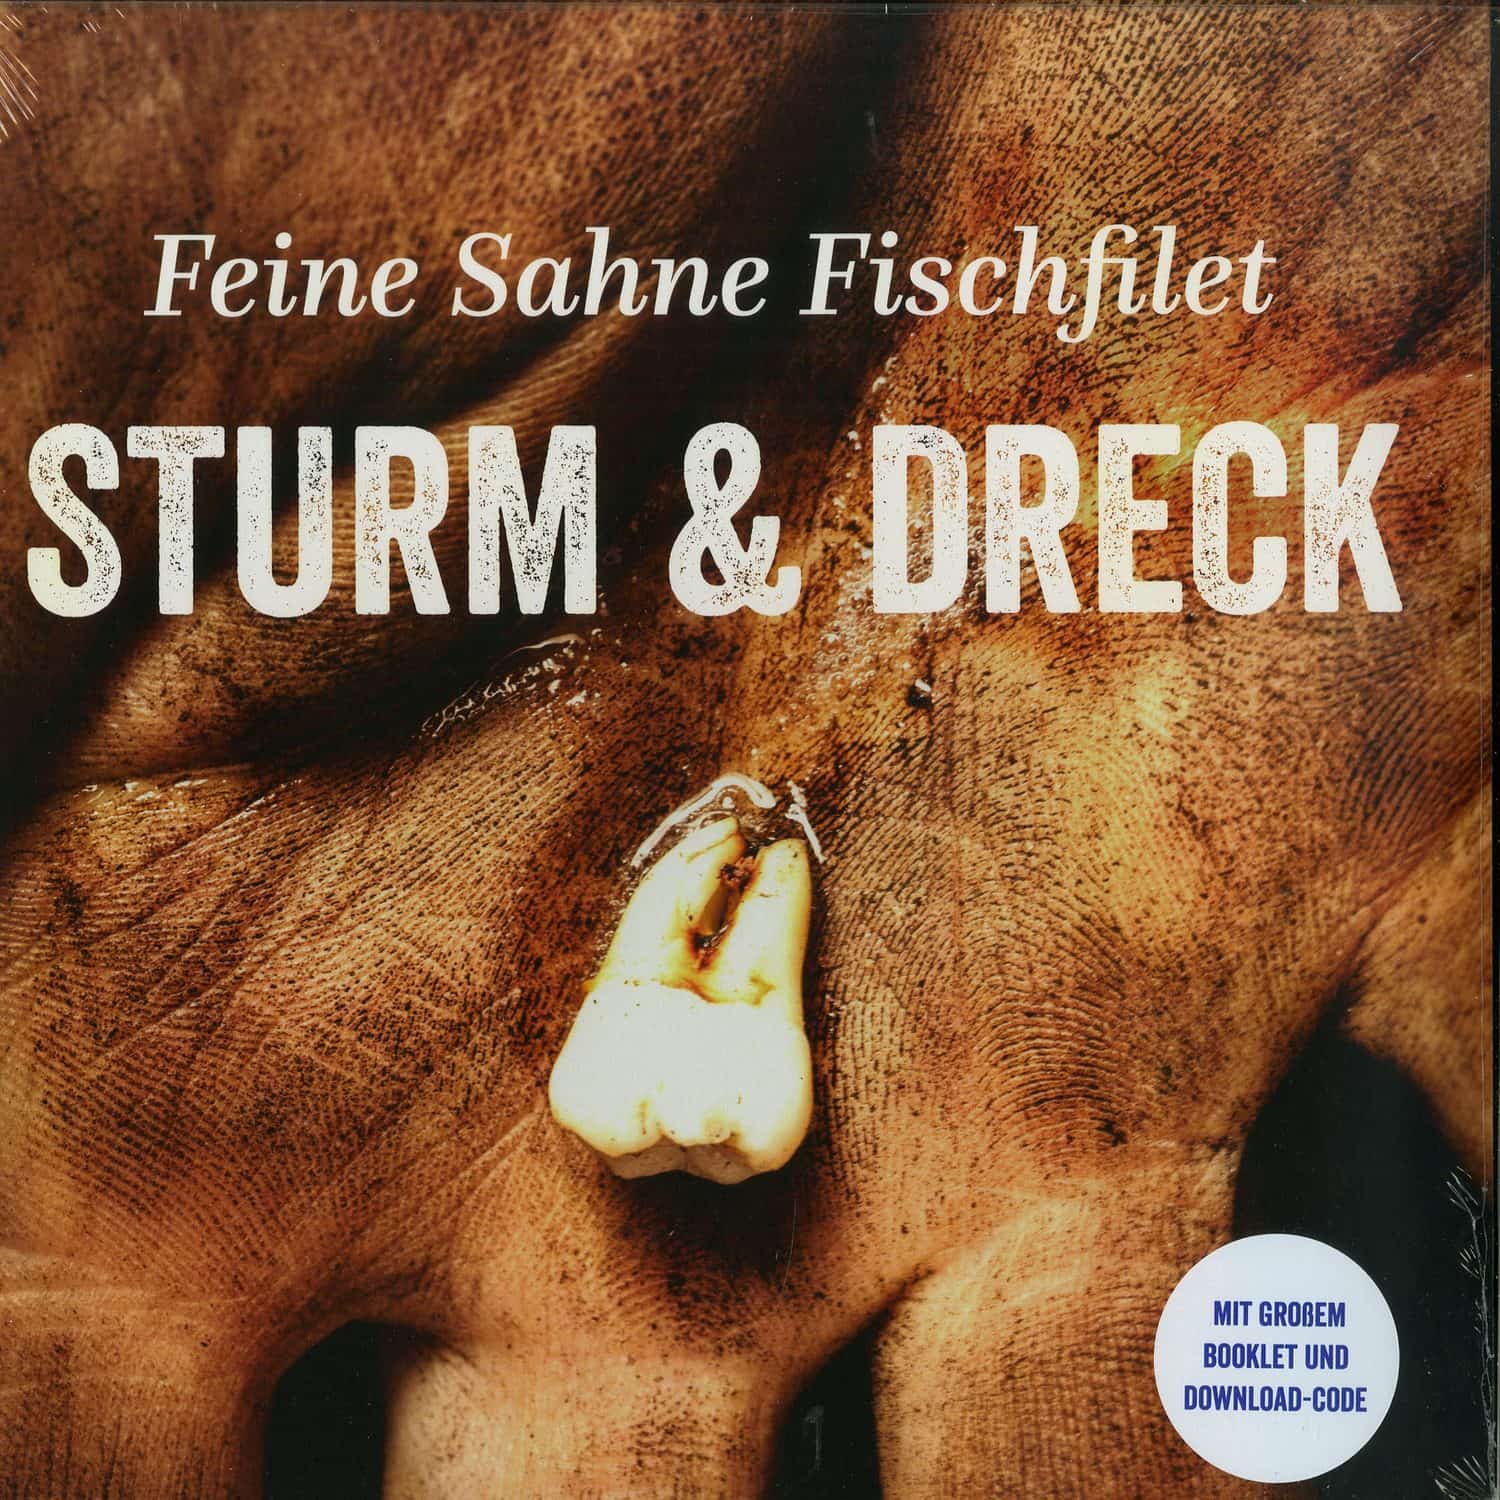 Feine Sahne Fischfilet - STURM & DRECK 